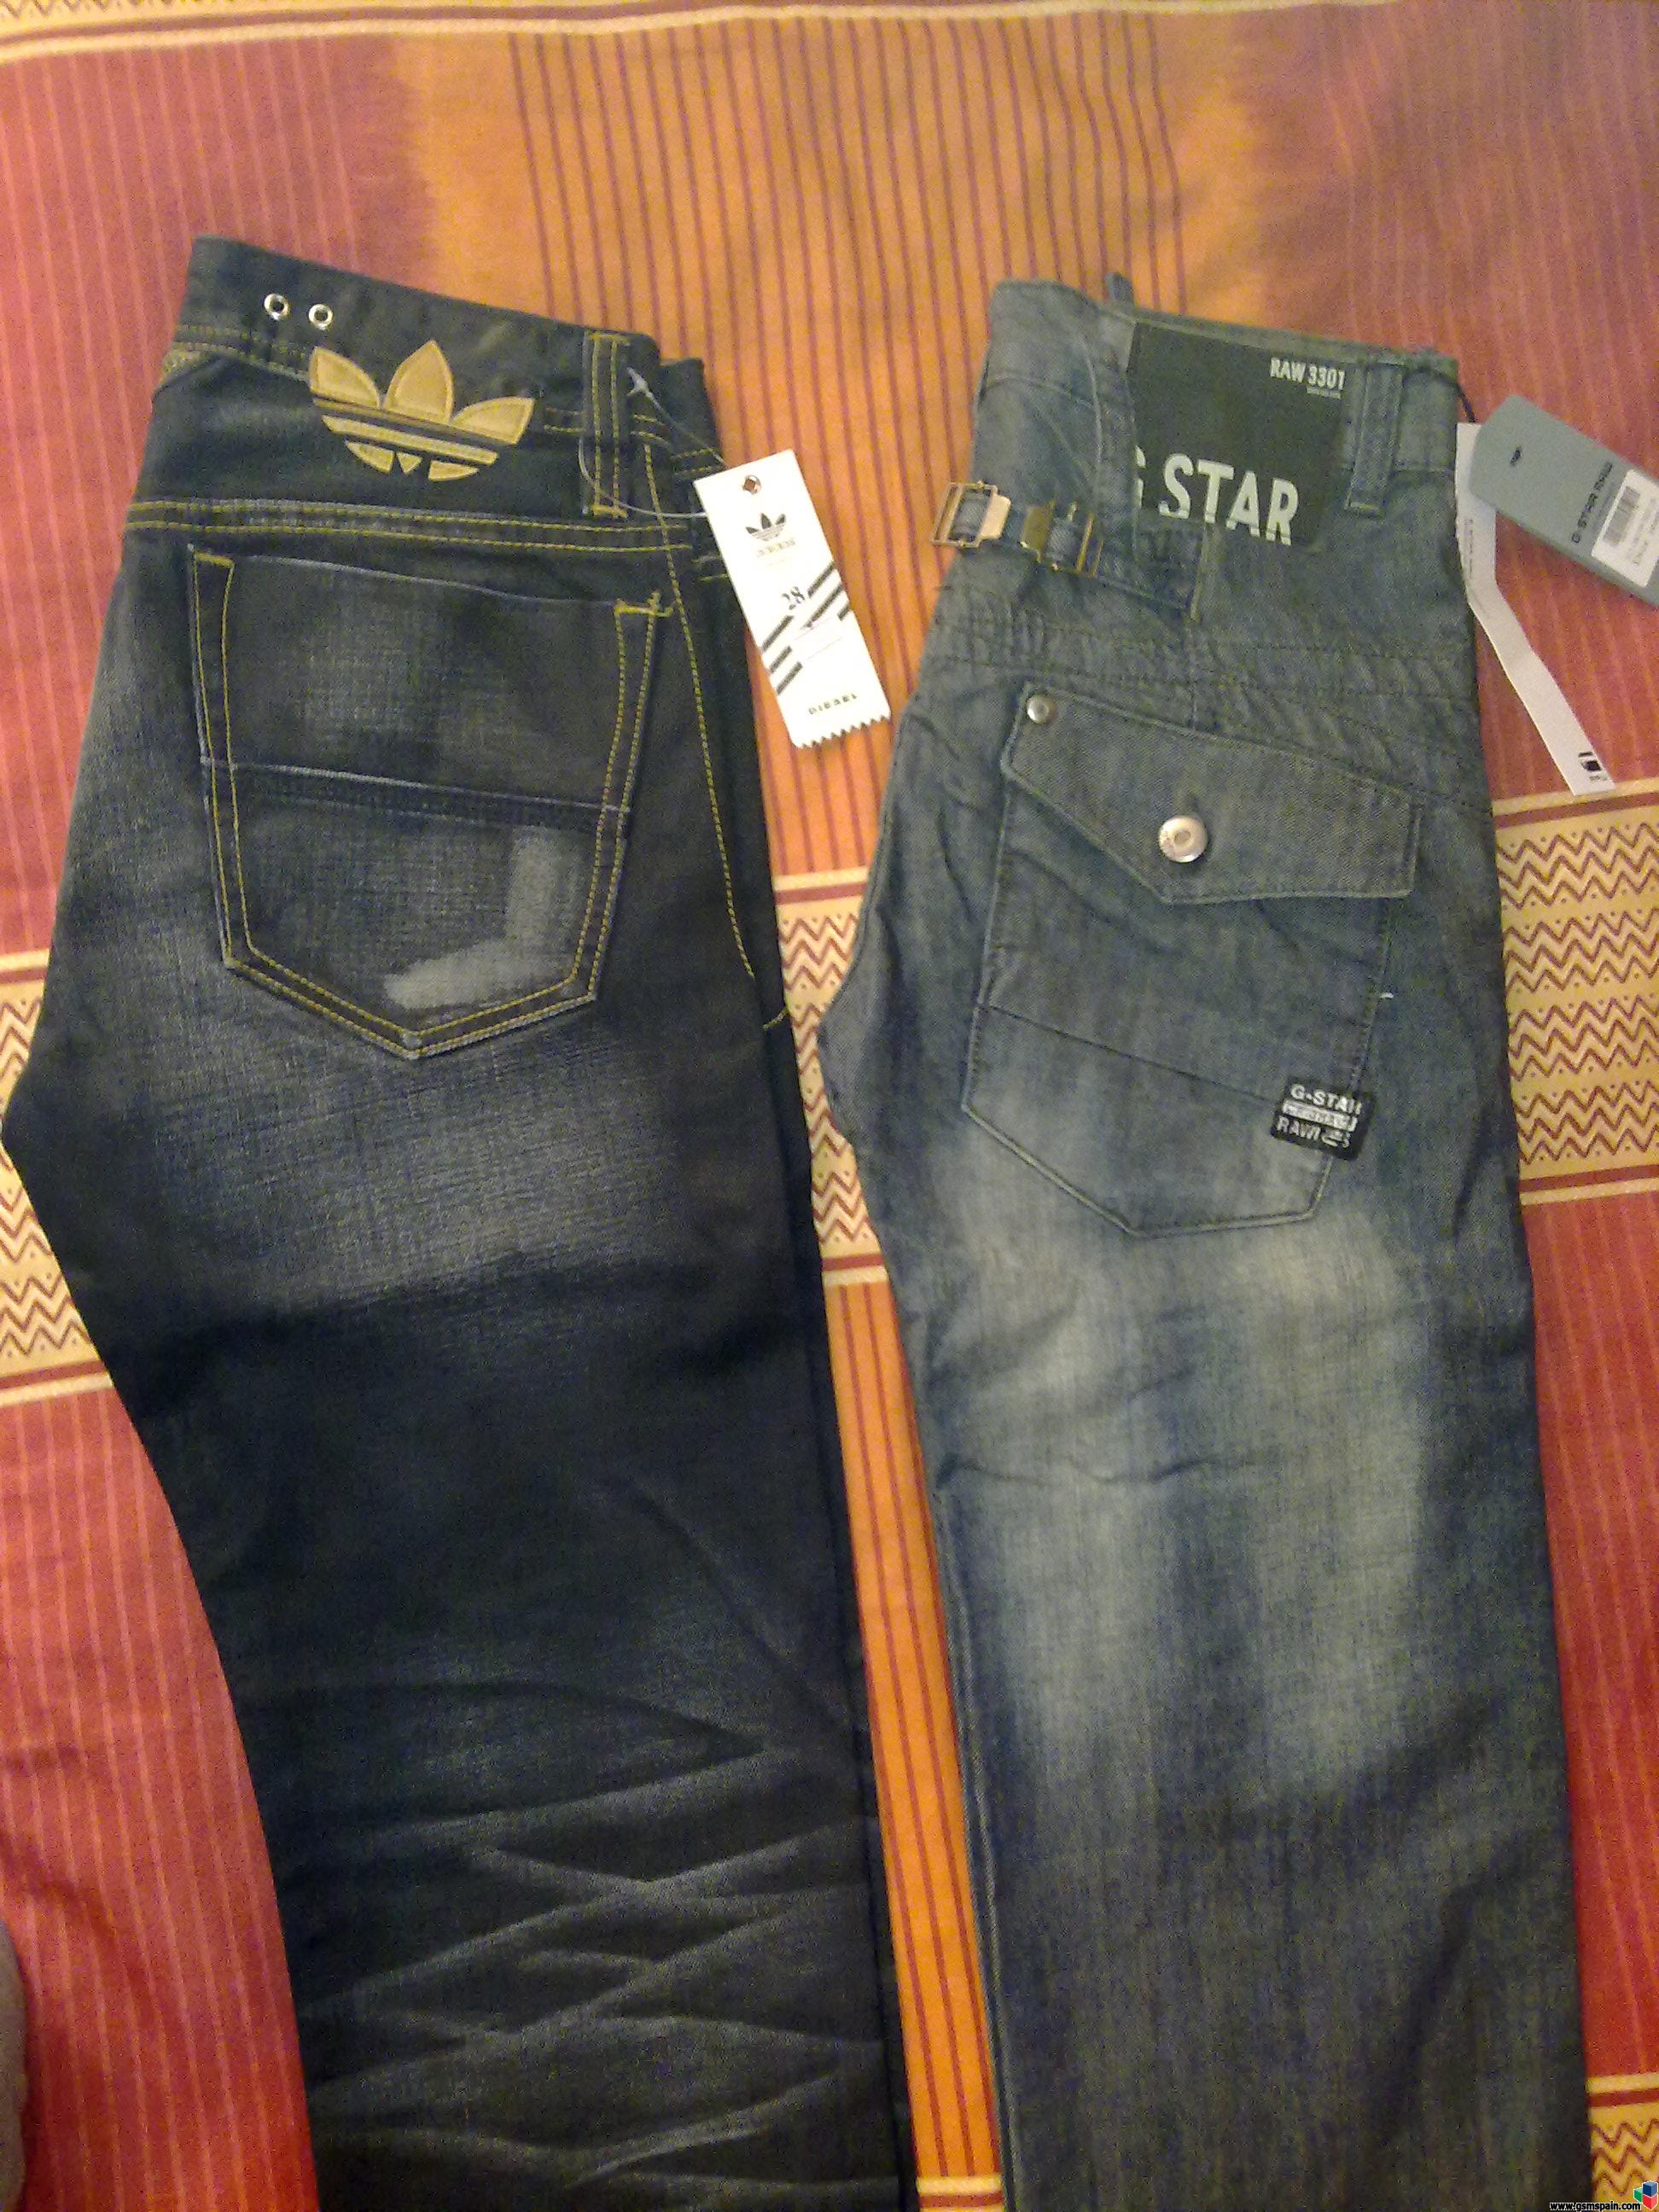 jugar Beca Mediante vendo pantalones vaqueros jeans diesel-adidas modelo especial y g-star raw  talla 28